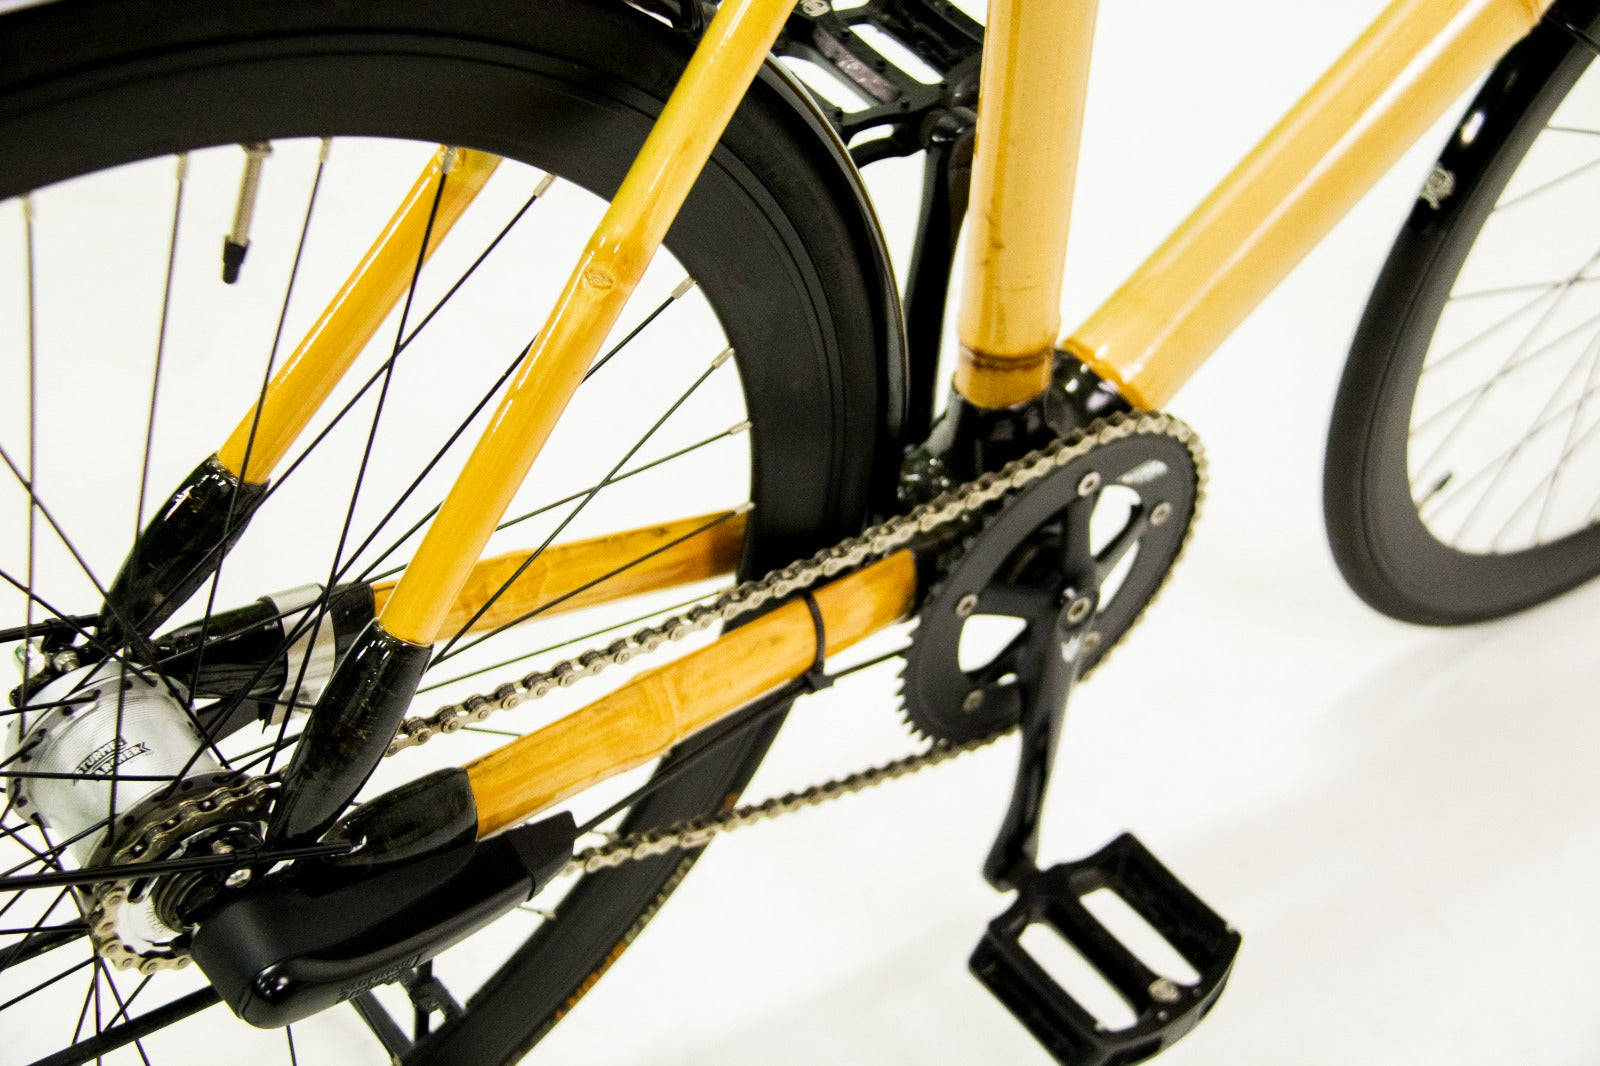 Bicicletta modello "Multiscatto" 3 velocità